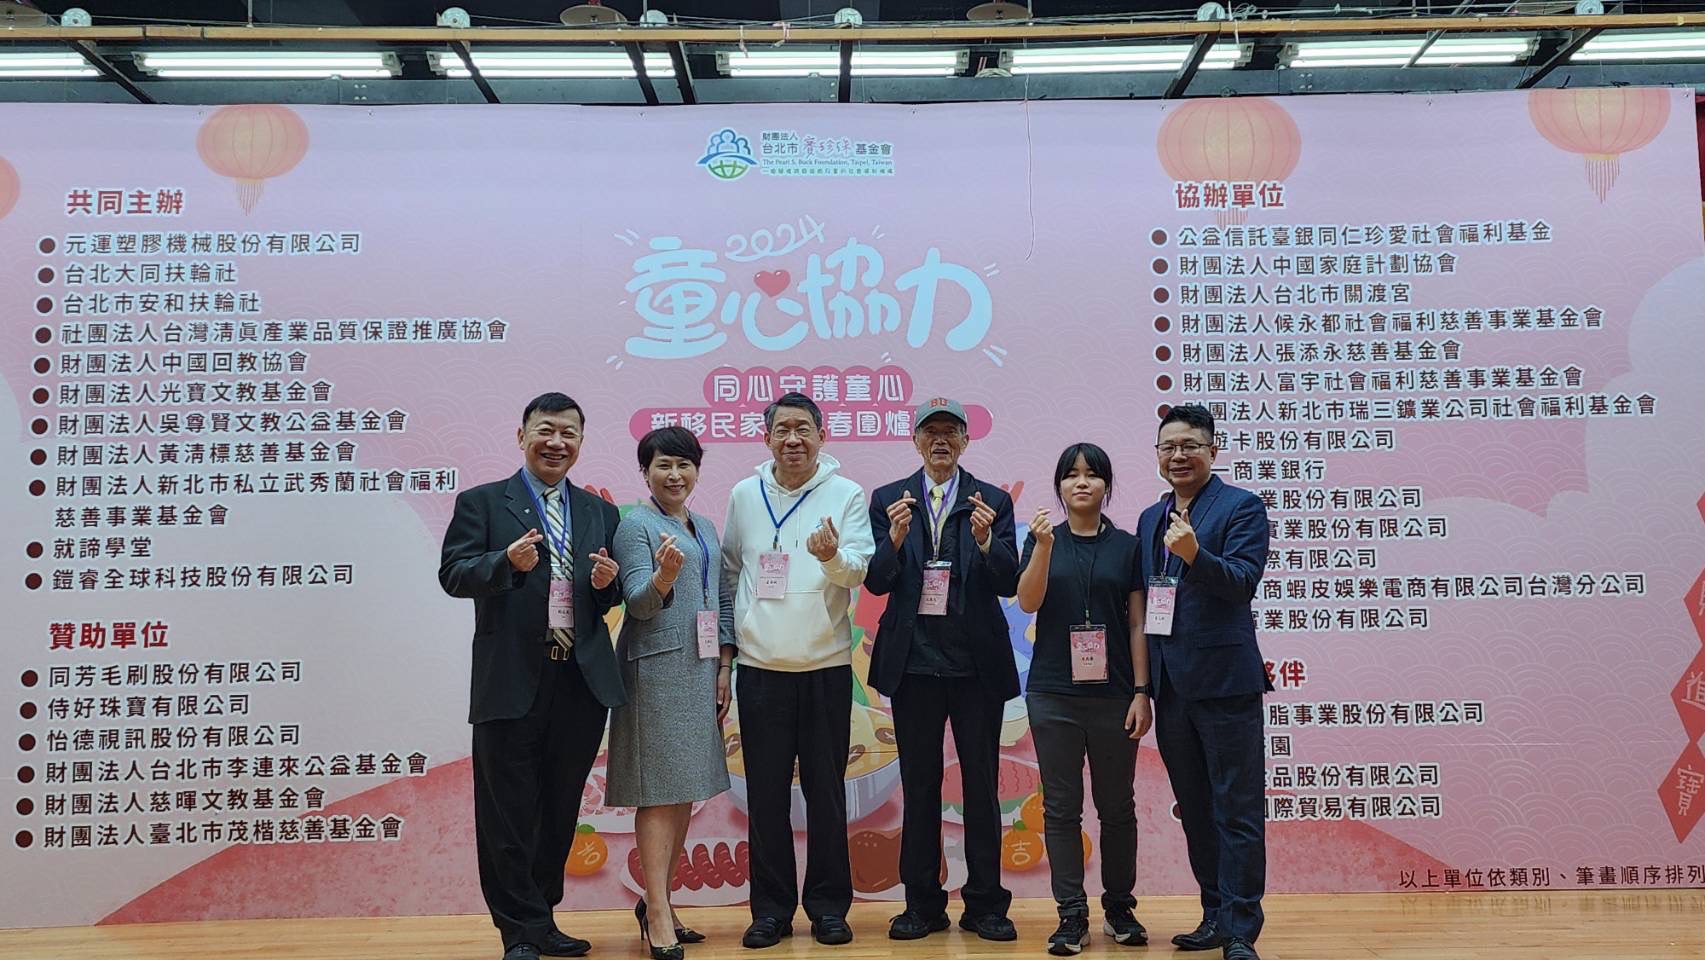 在 尤 英 夫 榮 譽 董 事 長 ( 右 三 ) 的 引 領 下 ， 賽 珍 珠 基 金 會 的 董 事 們 ( 左 起 為 劉 志 光 、 尤 姵 文 董 事 ， 右 一 為 筆 者 ) 持 續 同 心 協 力 ， 為 下 一 代 的 幸 福 成 長 作 出 努 力 。 